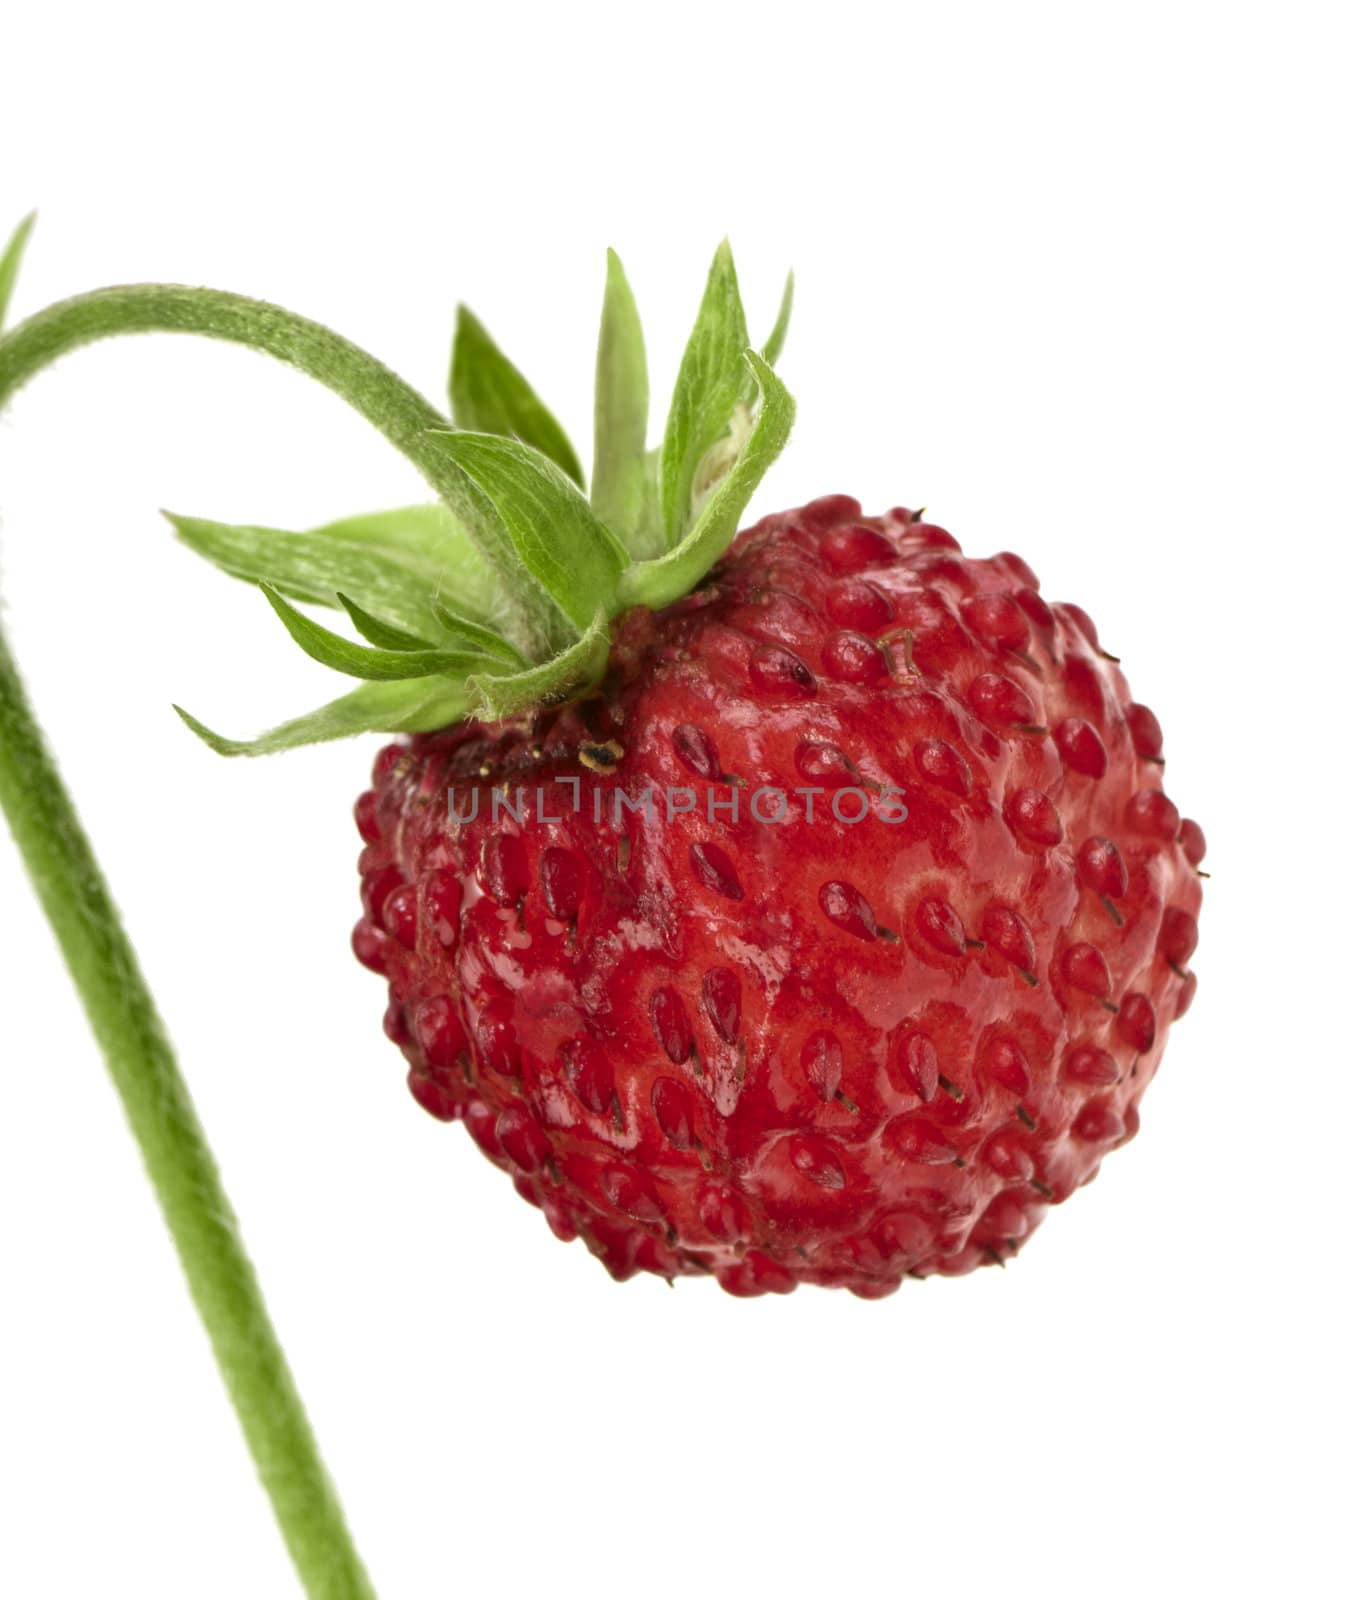 Wild strawberry by Kamensky